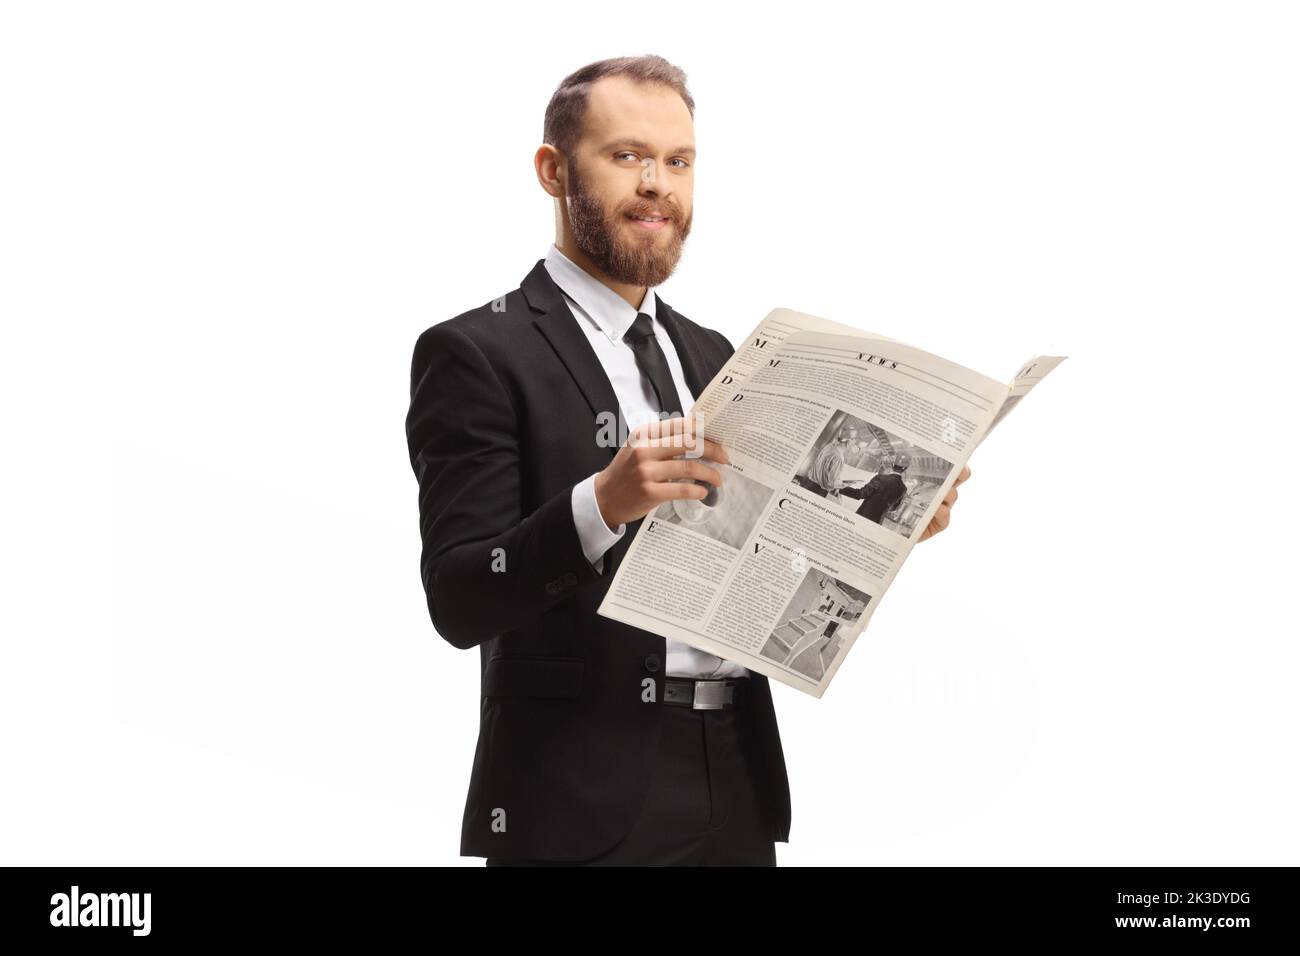 Hombre profesional en un traje parado con un periódico y sonriendo a la cámara aislada sobre fondo blanco Foto de stock